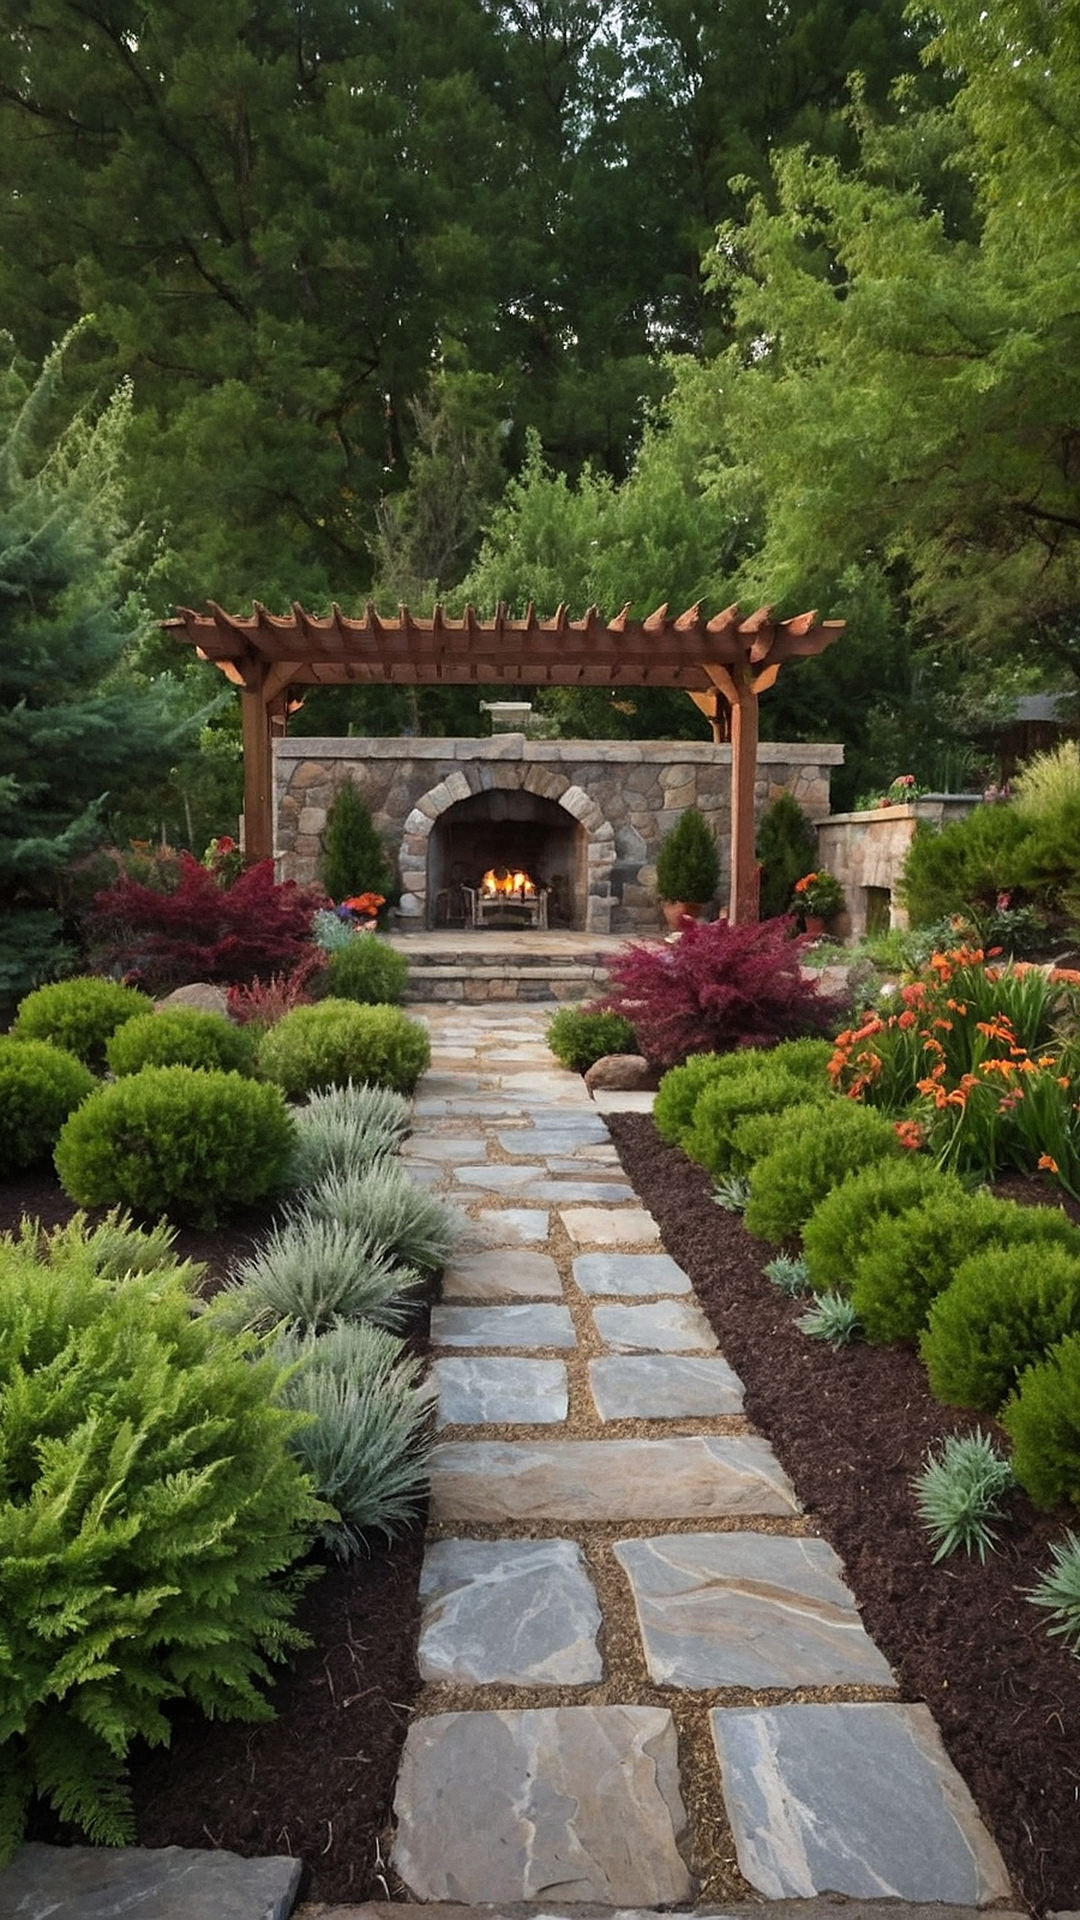 Transform Your Deck into a Garden Paradise